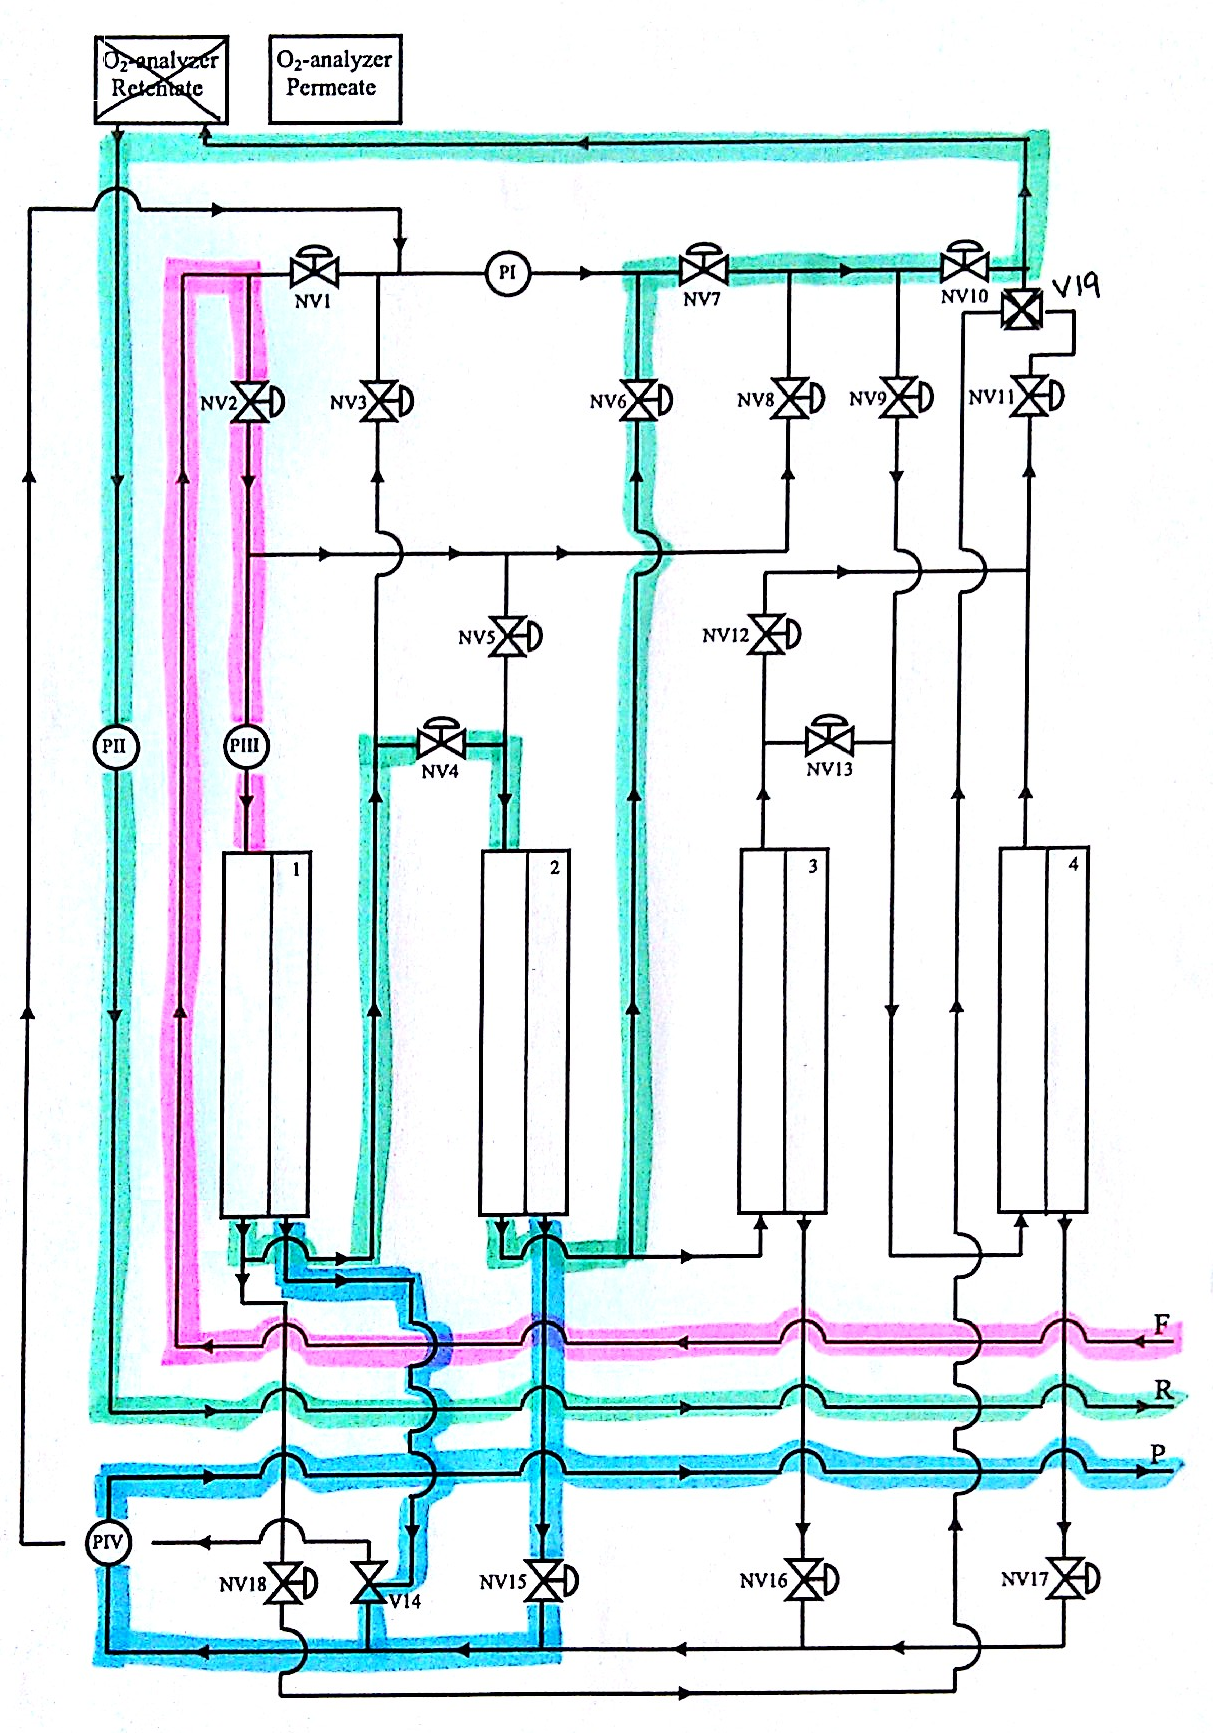 I Figur C.3 er flytskjema for konfigurasjon 3 vist. Figur C.3: Flytskjema for konfigurasjon 3, som består av to moduler i serie.